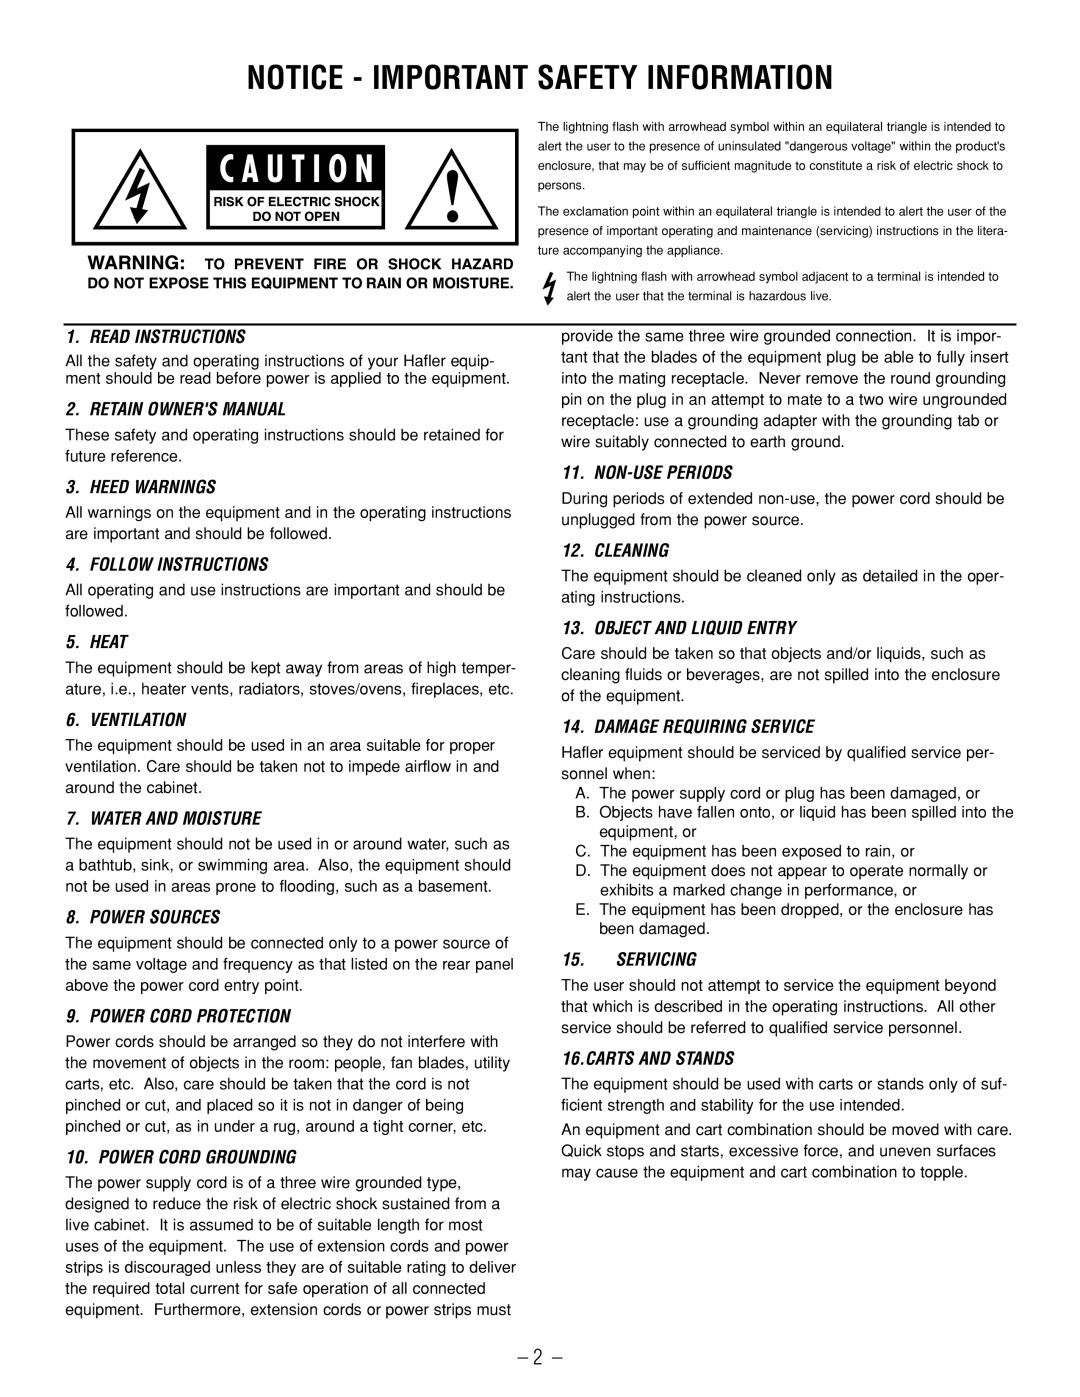 Hafler SR2300CE, SR2800CE owner manual Notice - Important Safety Information 